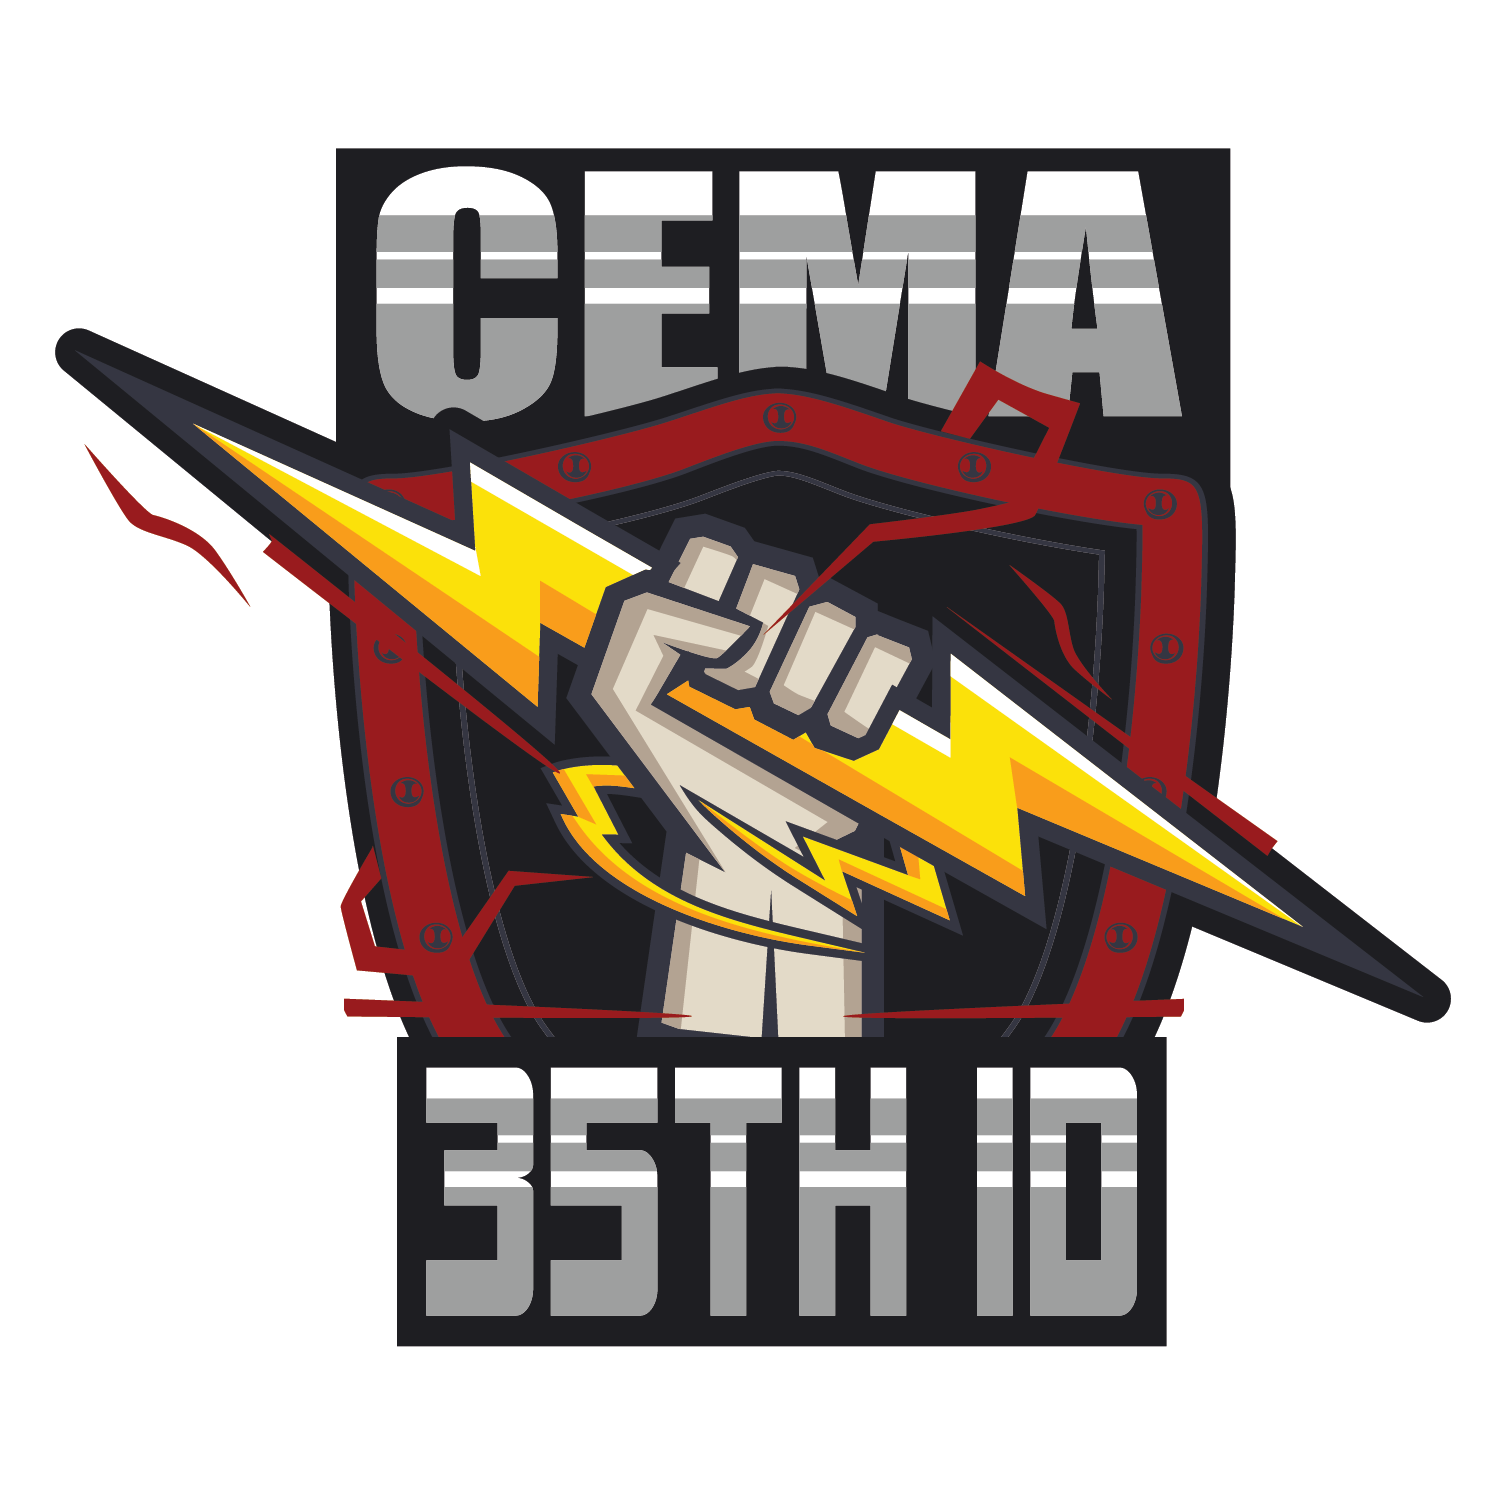 CEMA, 35th ID